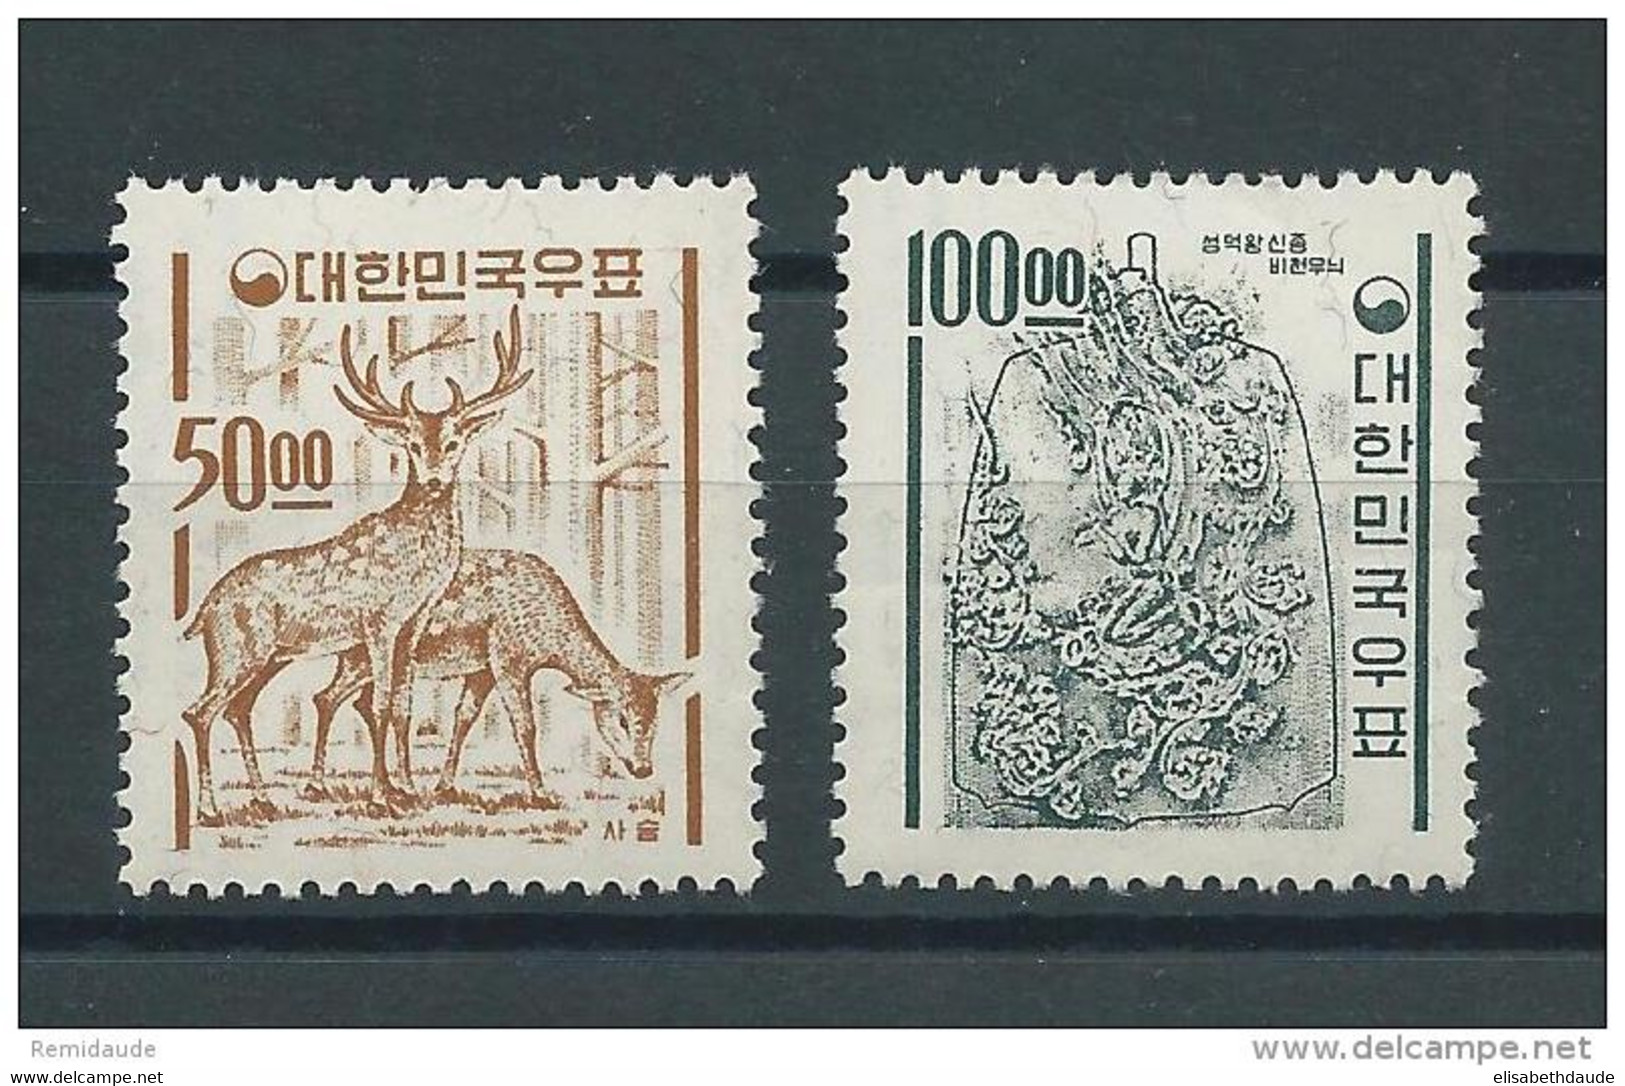 KOREA - YVERT N° 305/306 FILIGRANE + FILS DE SOIE ** - MNH - CERFS - ANIMAUX - COTE = 175 EUROS - Corea Del Sur